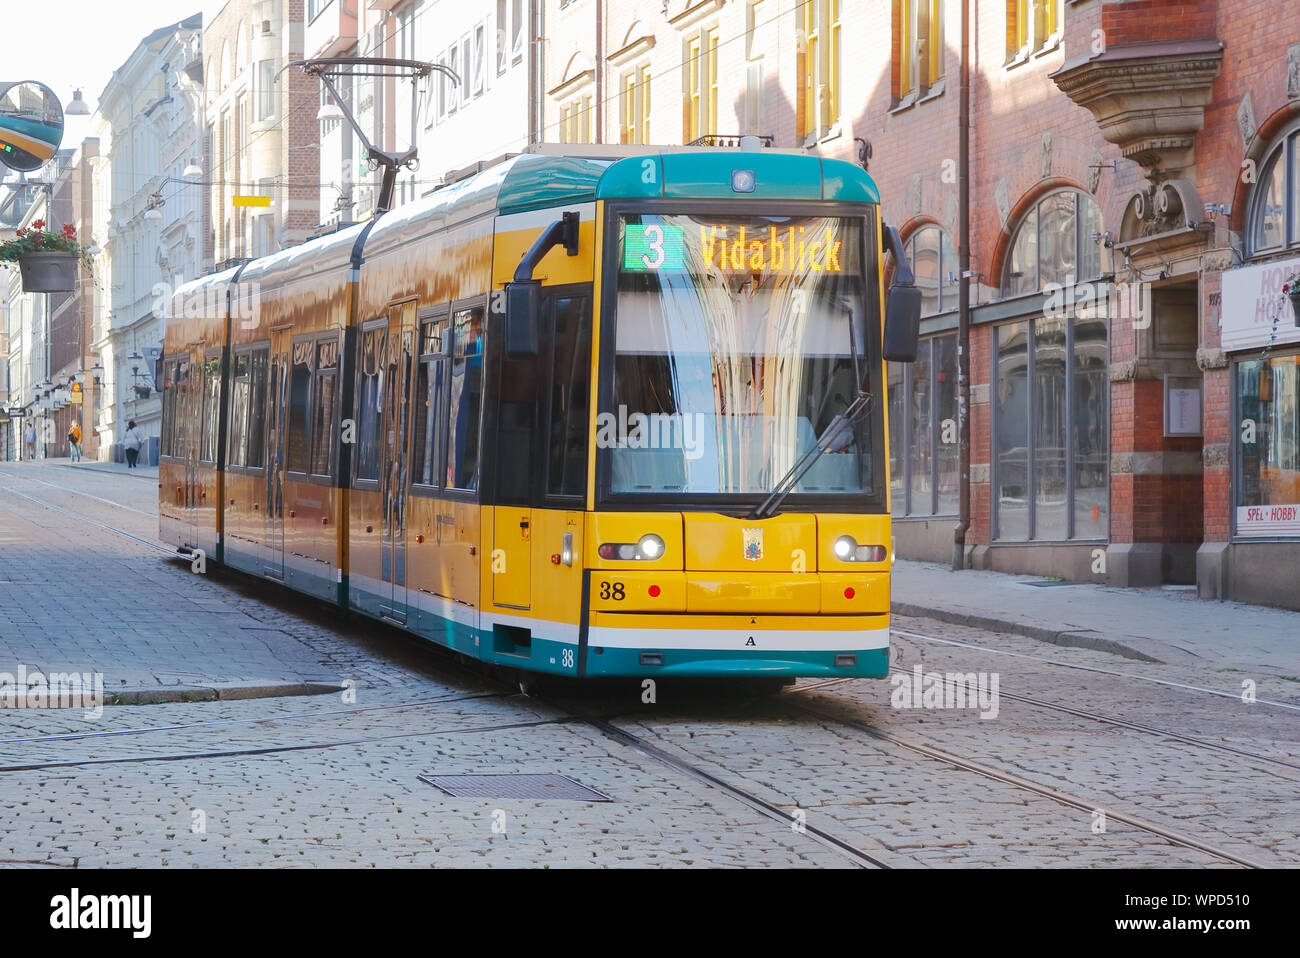 Norrköping, Schweden - 2 September, 2019: Frontansicht eines gelben Straßenbahn der Klasse M06 in Dienst auf der Linie 3 an der Straße Drottninggatan. Stockfoto